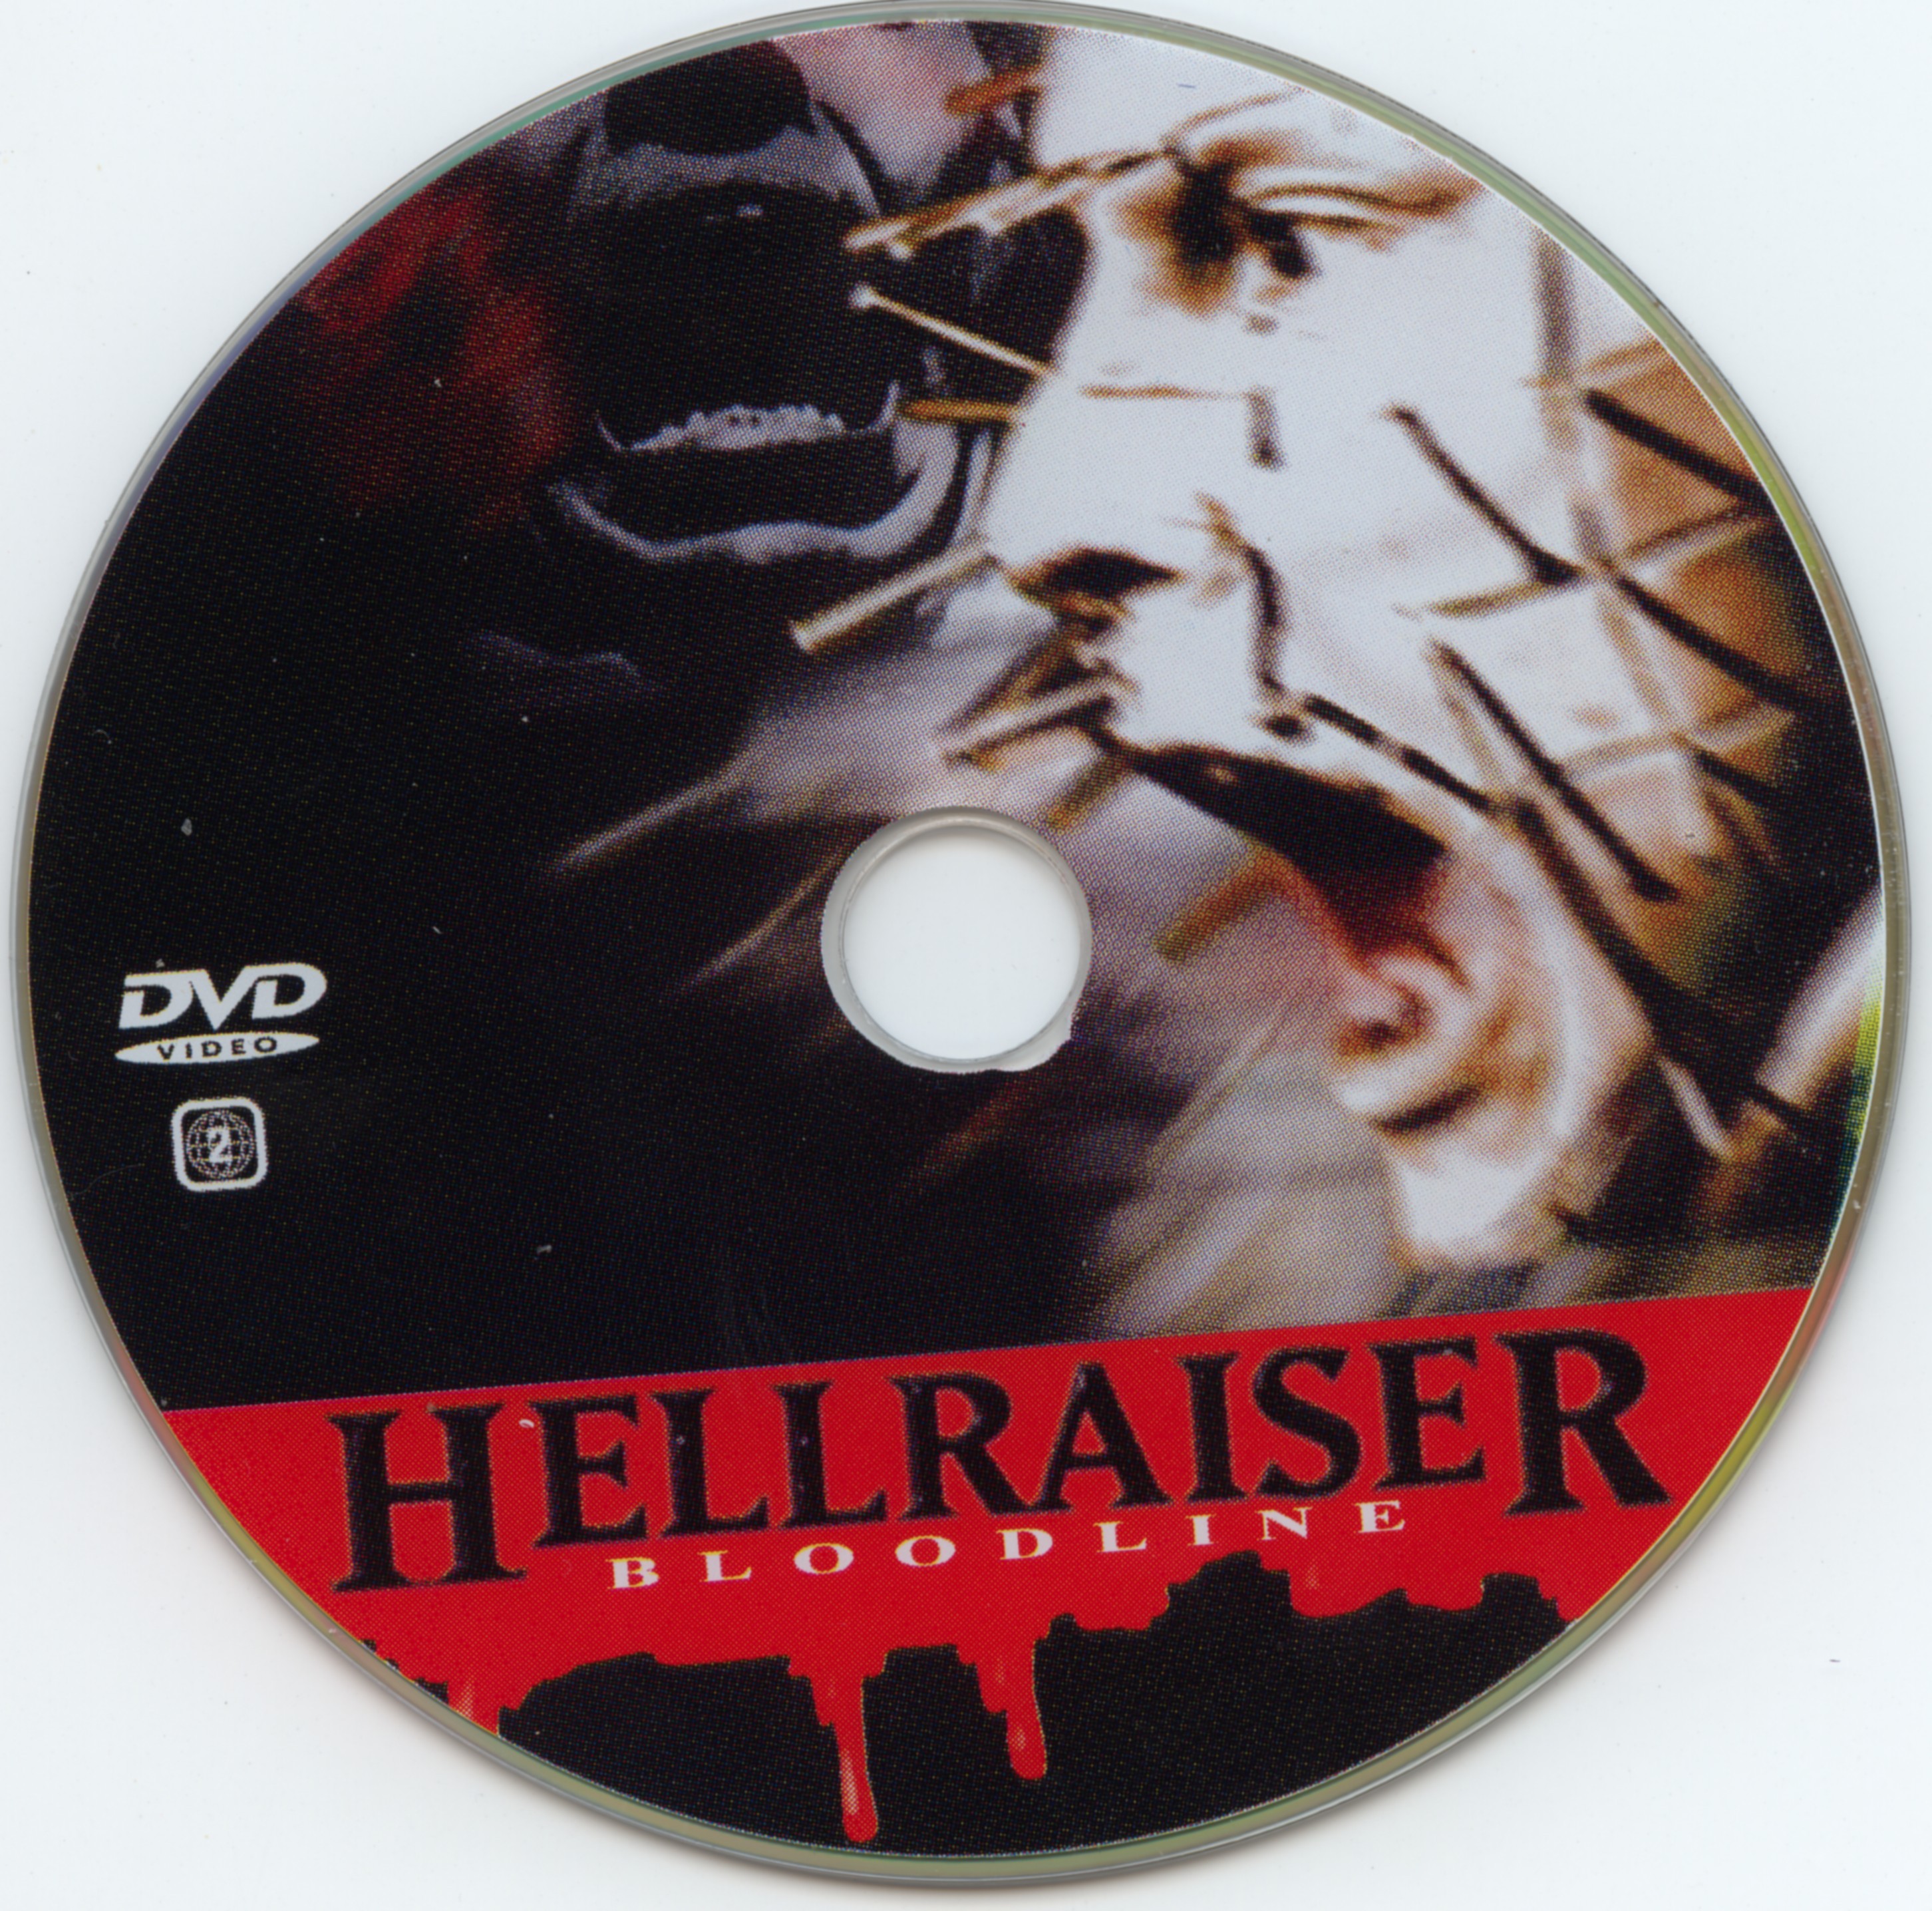 Hellraiser bloodline